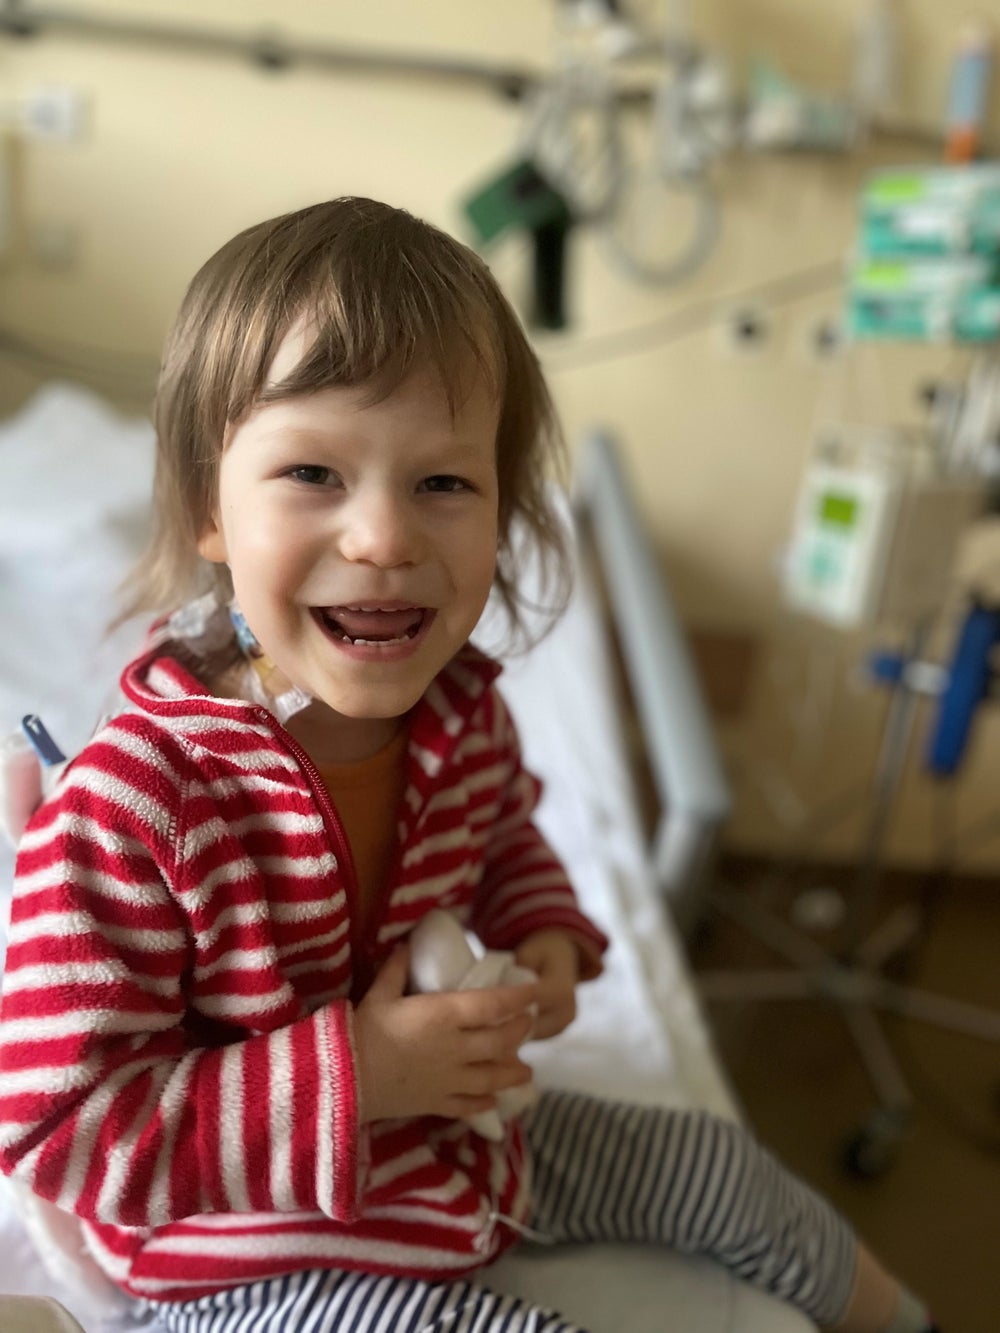 Patientin Svea sitzt im Krankenhausbett und lächelt